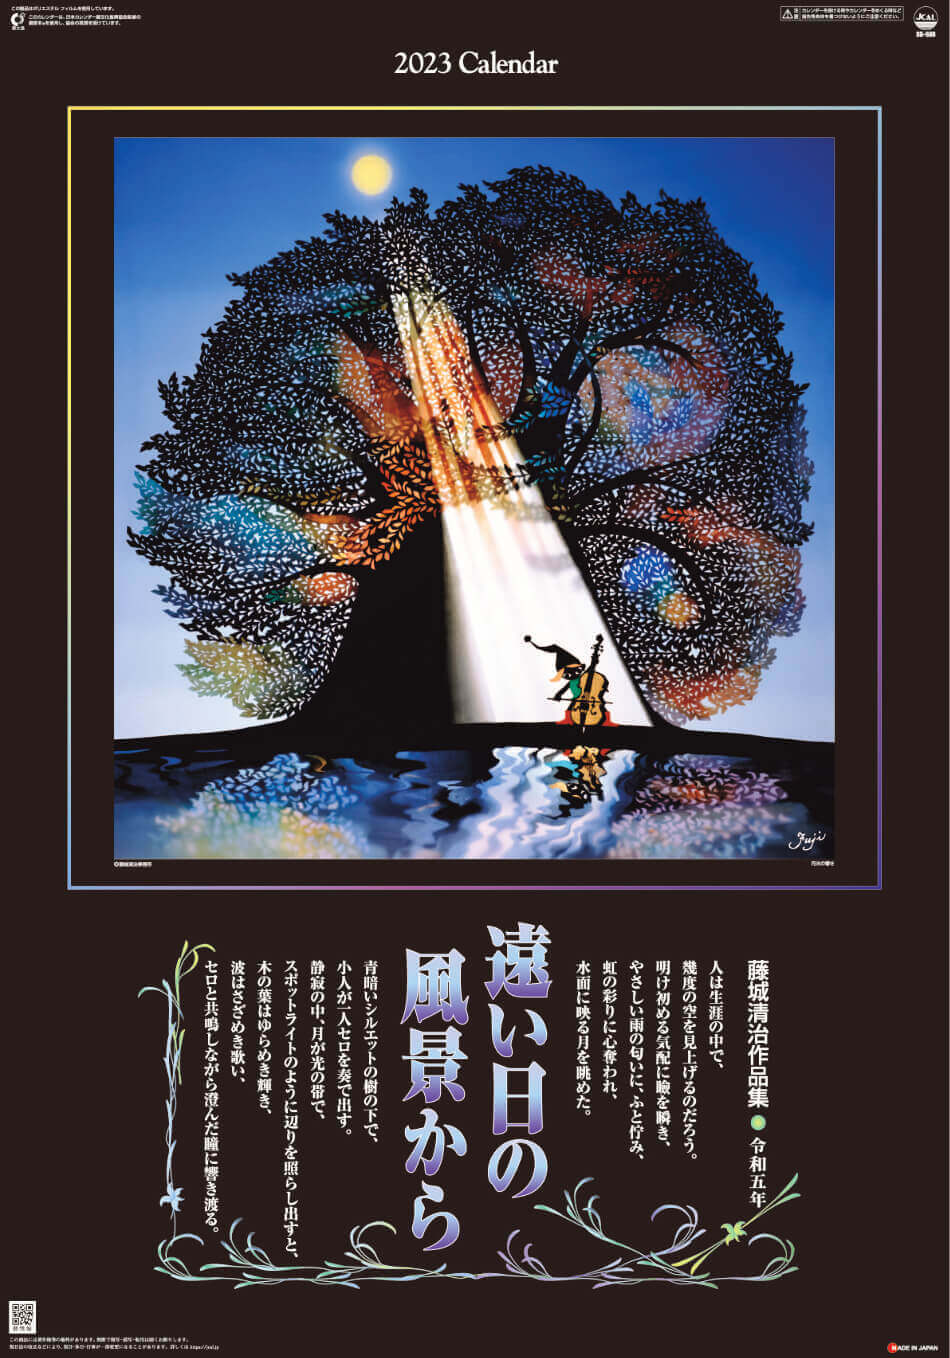  遠い日の風景から(影絵) 藤城清治 (フィルムカレンダー) 2023年カレンダーの画像